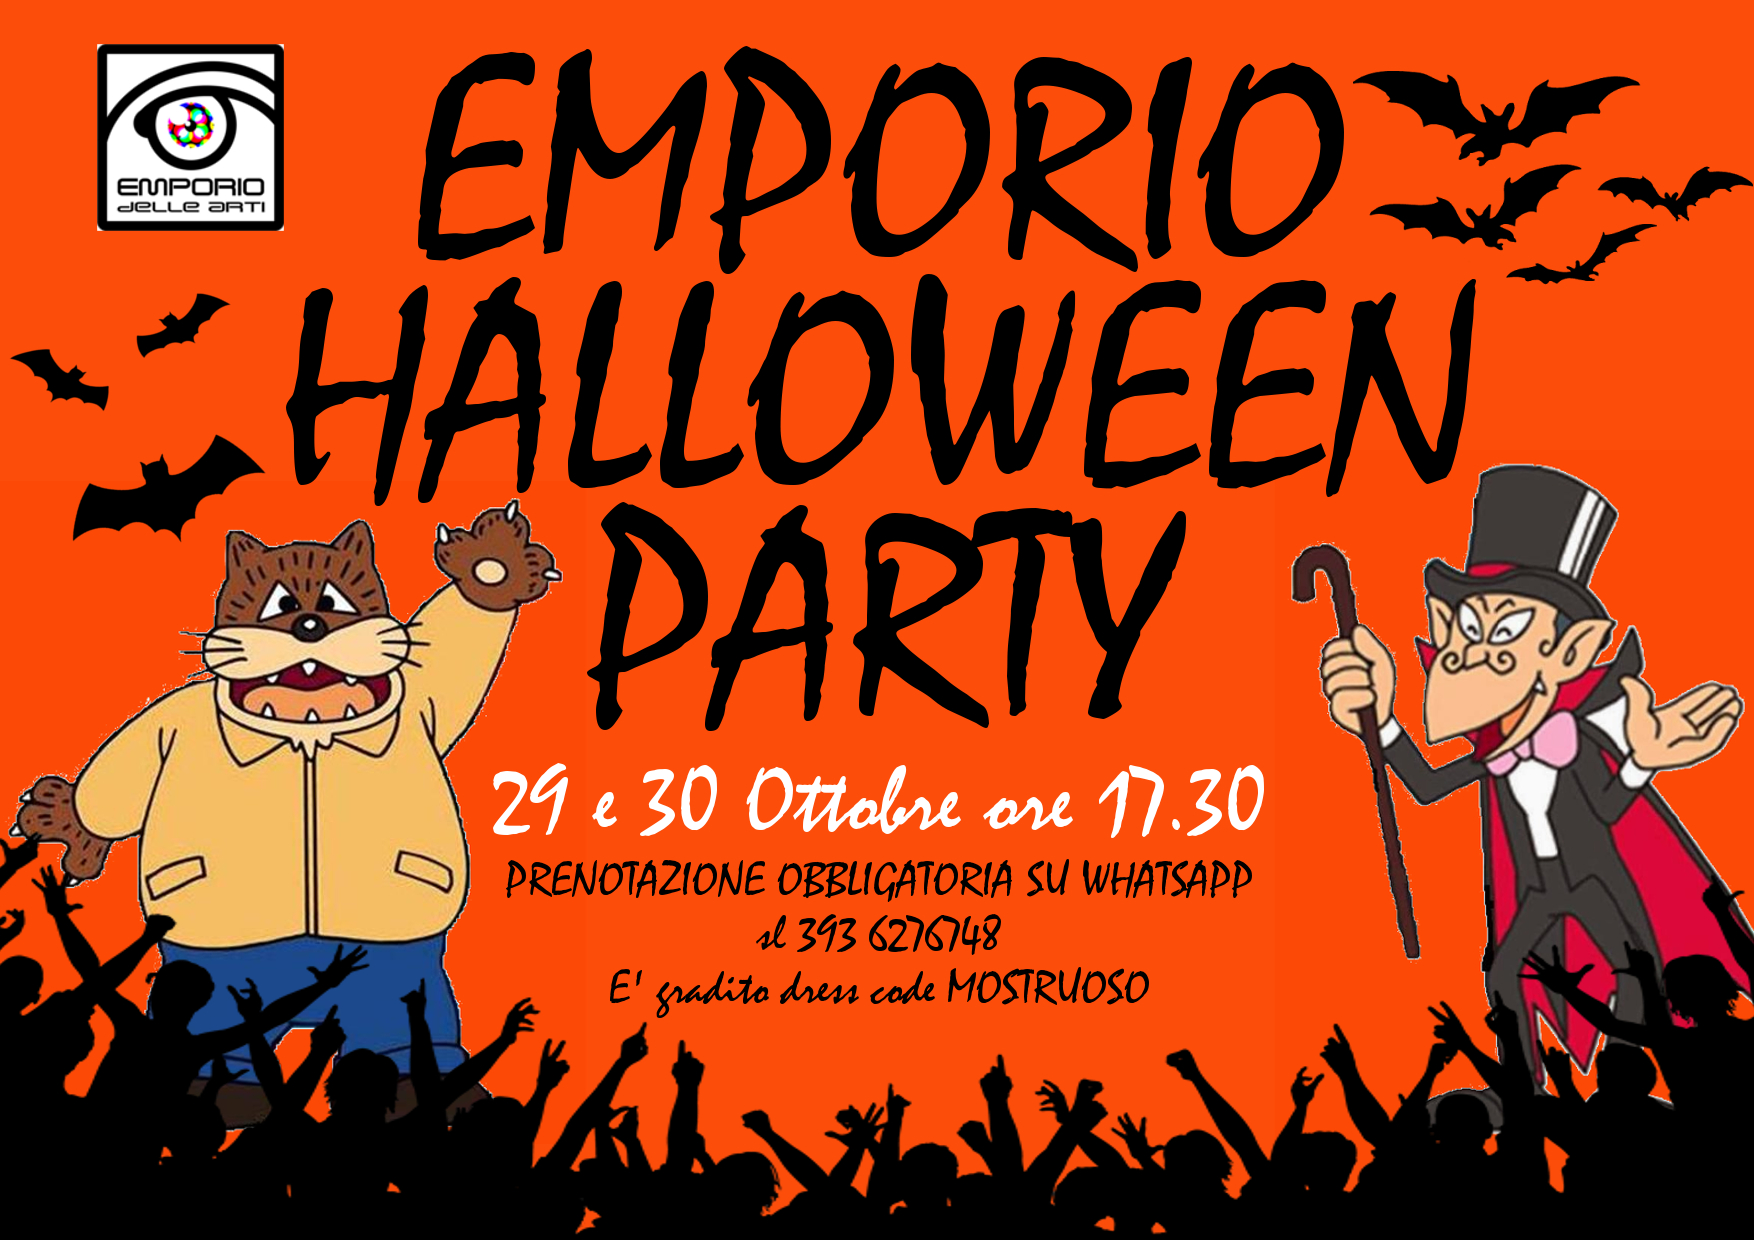 29 e 30 Ottobre – “Emporio Halloween Party”